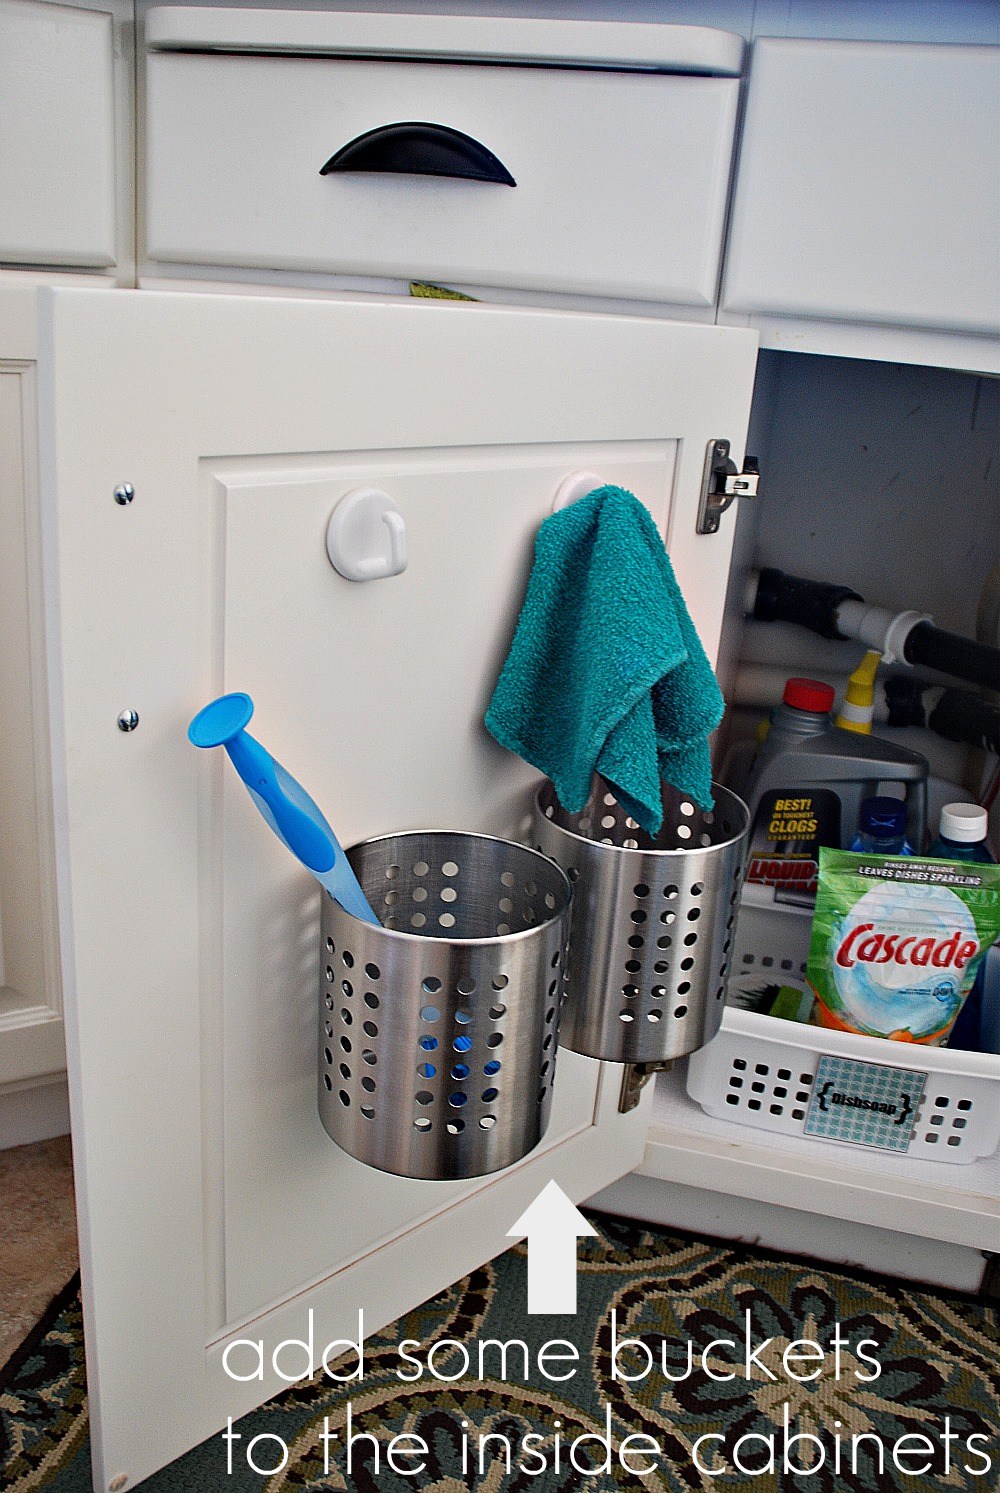 https://www.thehappyhousie.com/wp-content/uploads/2017/01/kitchen-organization-ideas-buckets-for-in-cabinet-storage.jpg